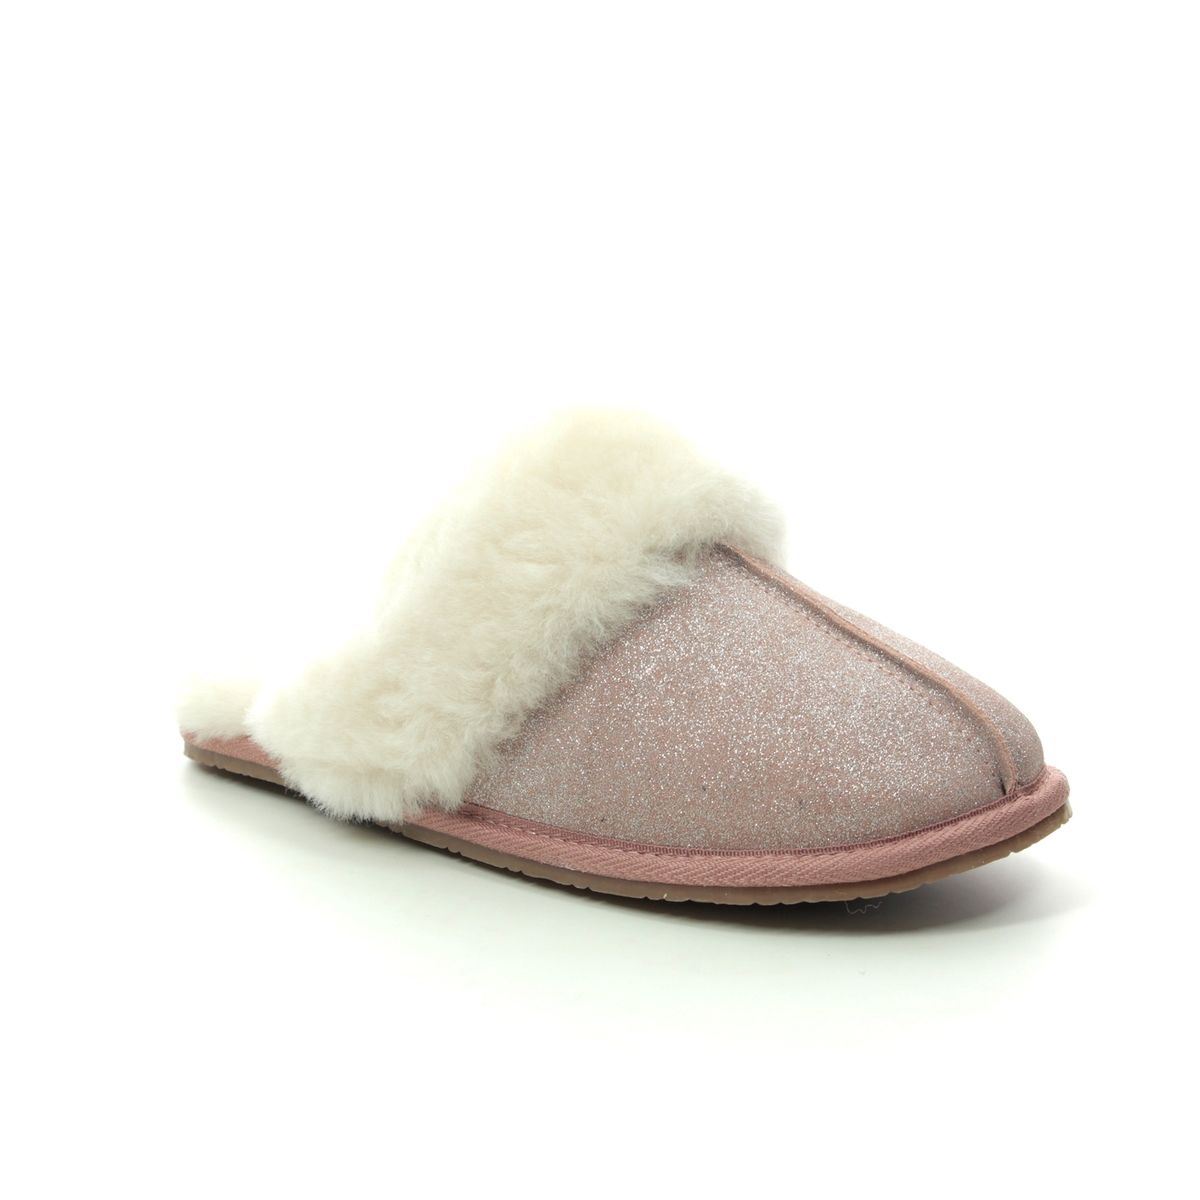 clarks cozily warm slippers